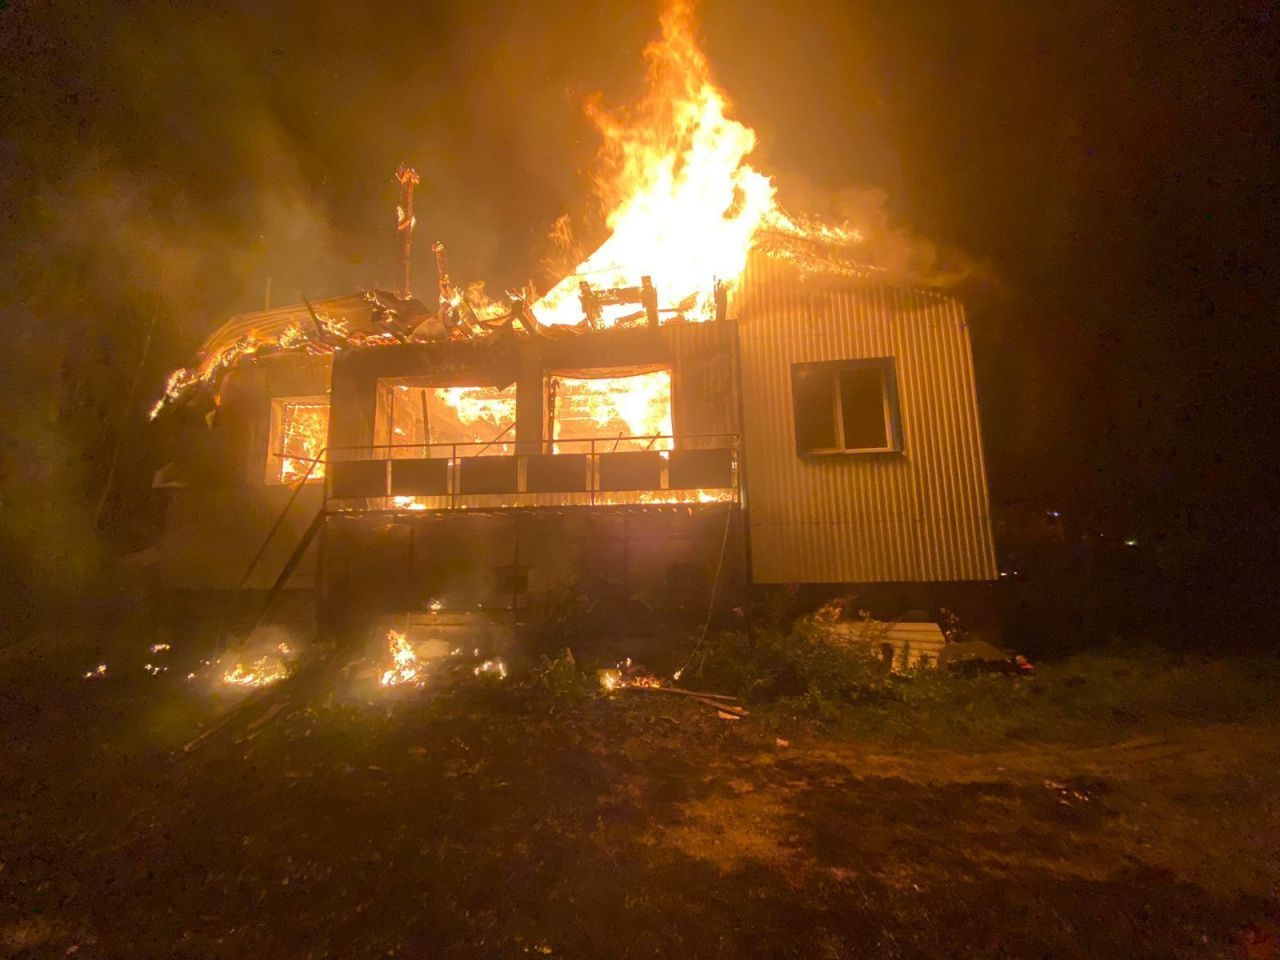 Пожарные колонии помогли потушить дом на Малой Лимке 